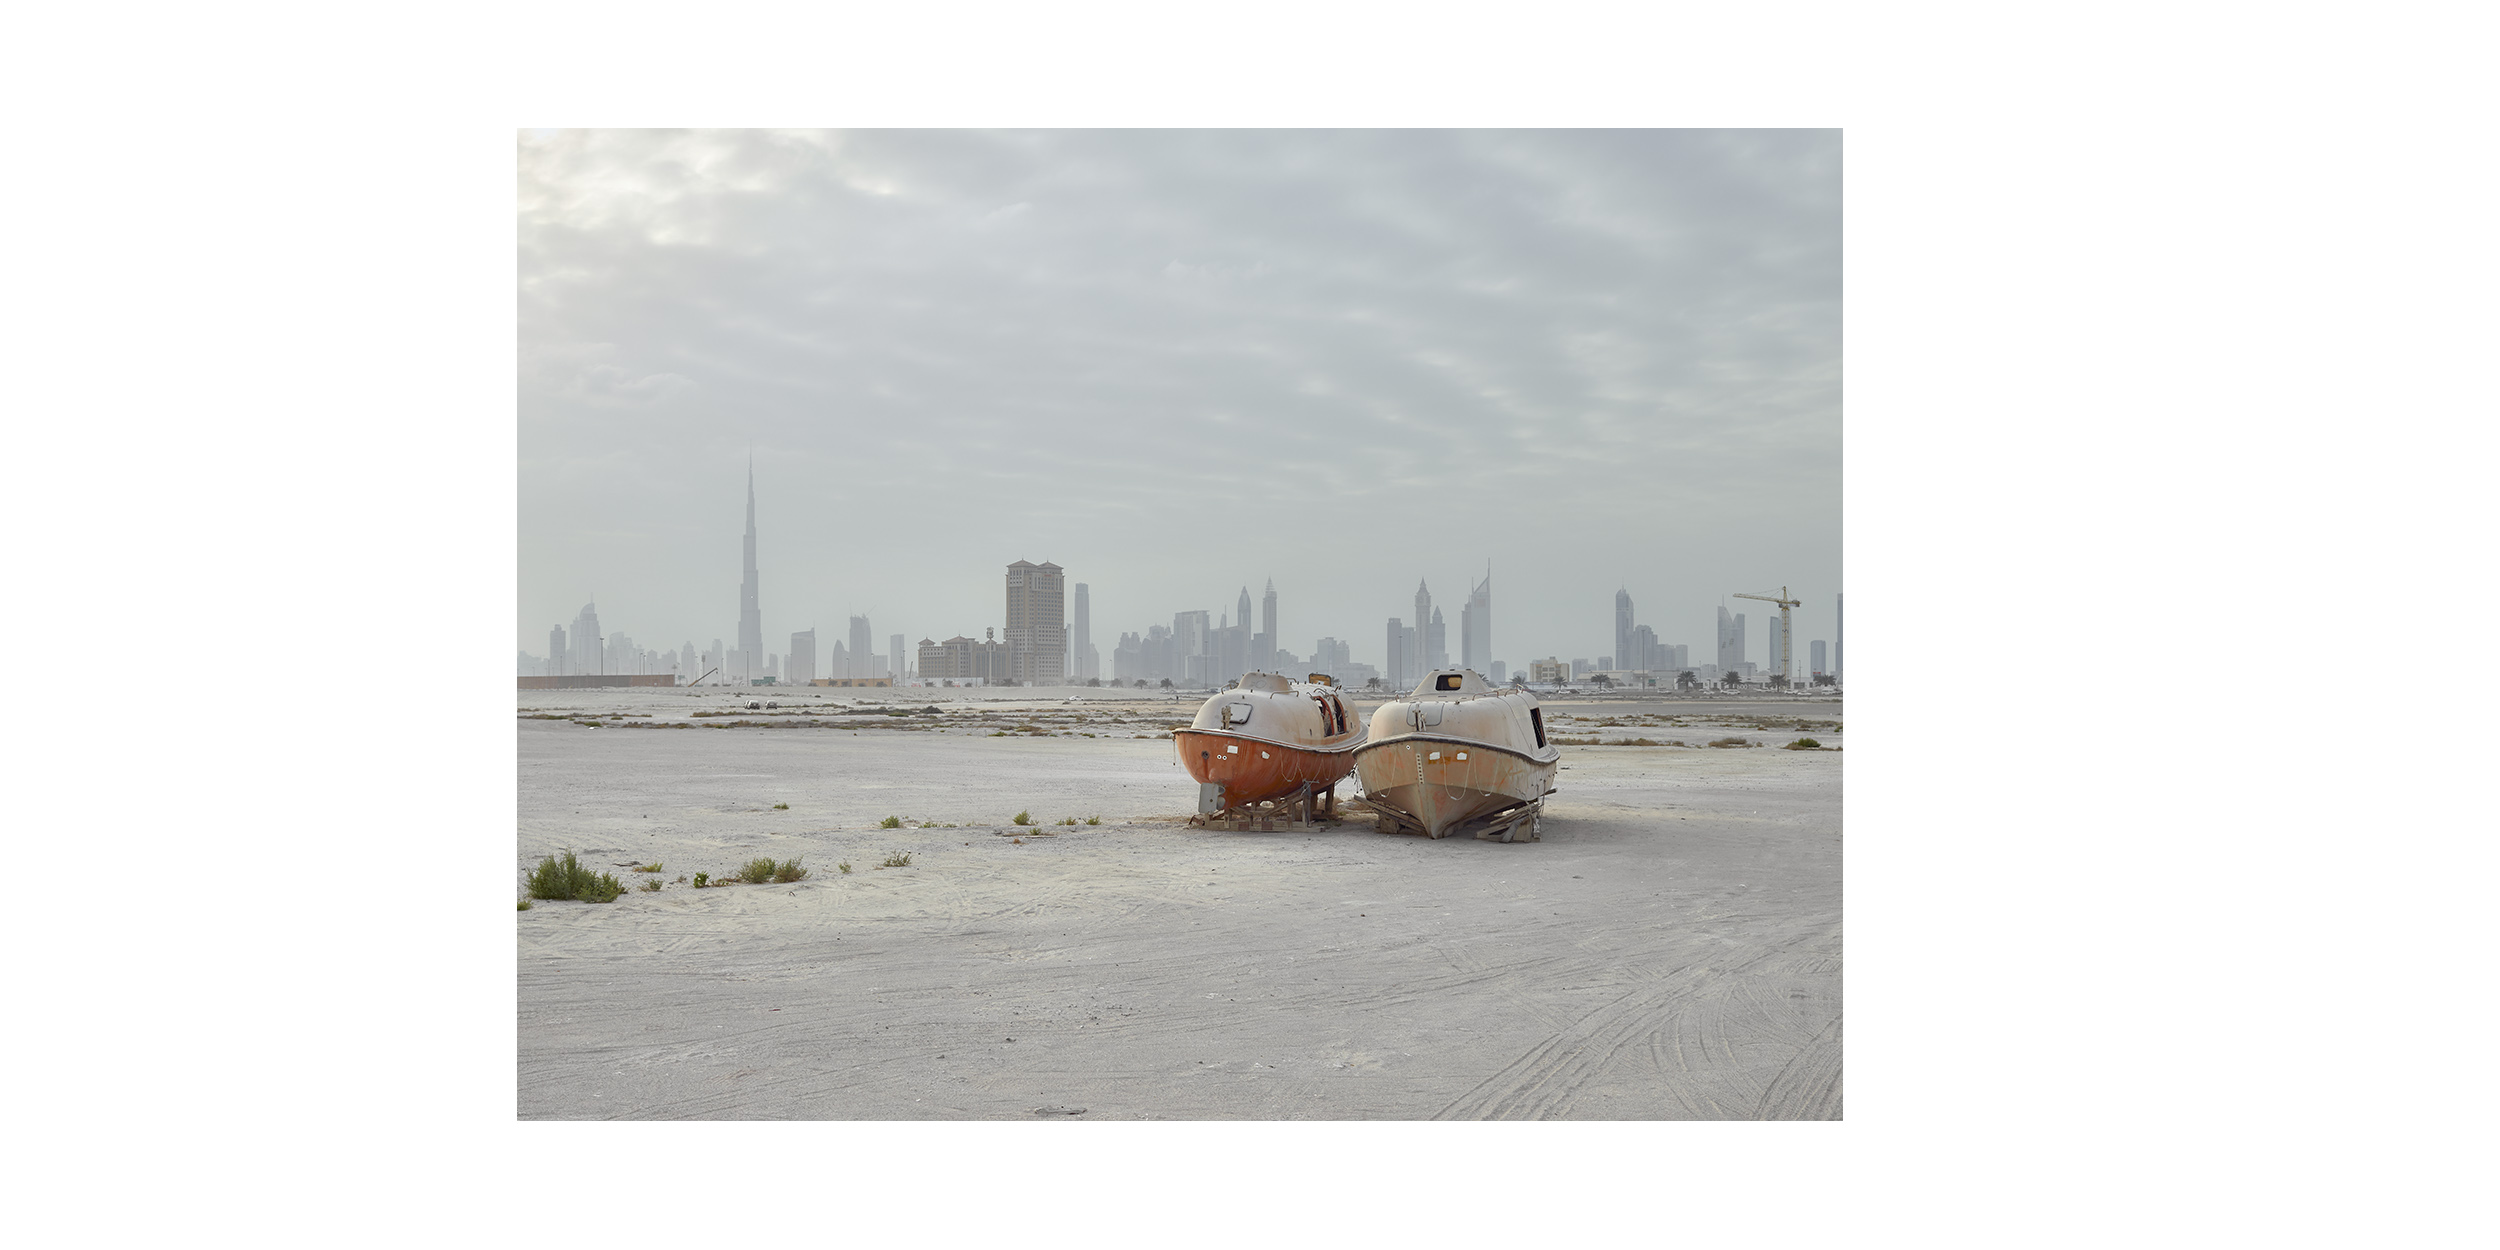  Lifeboats, Al Jaddaf, Dubai  